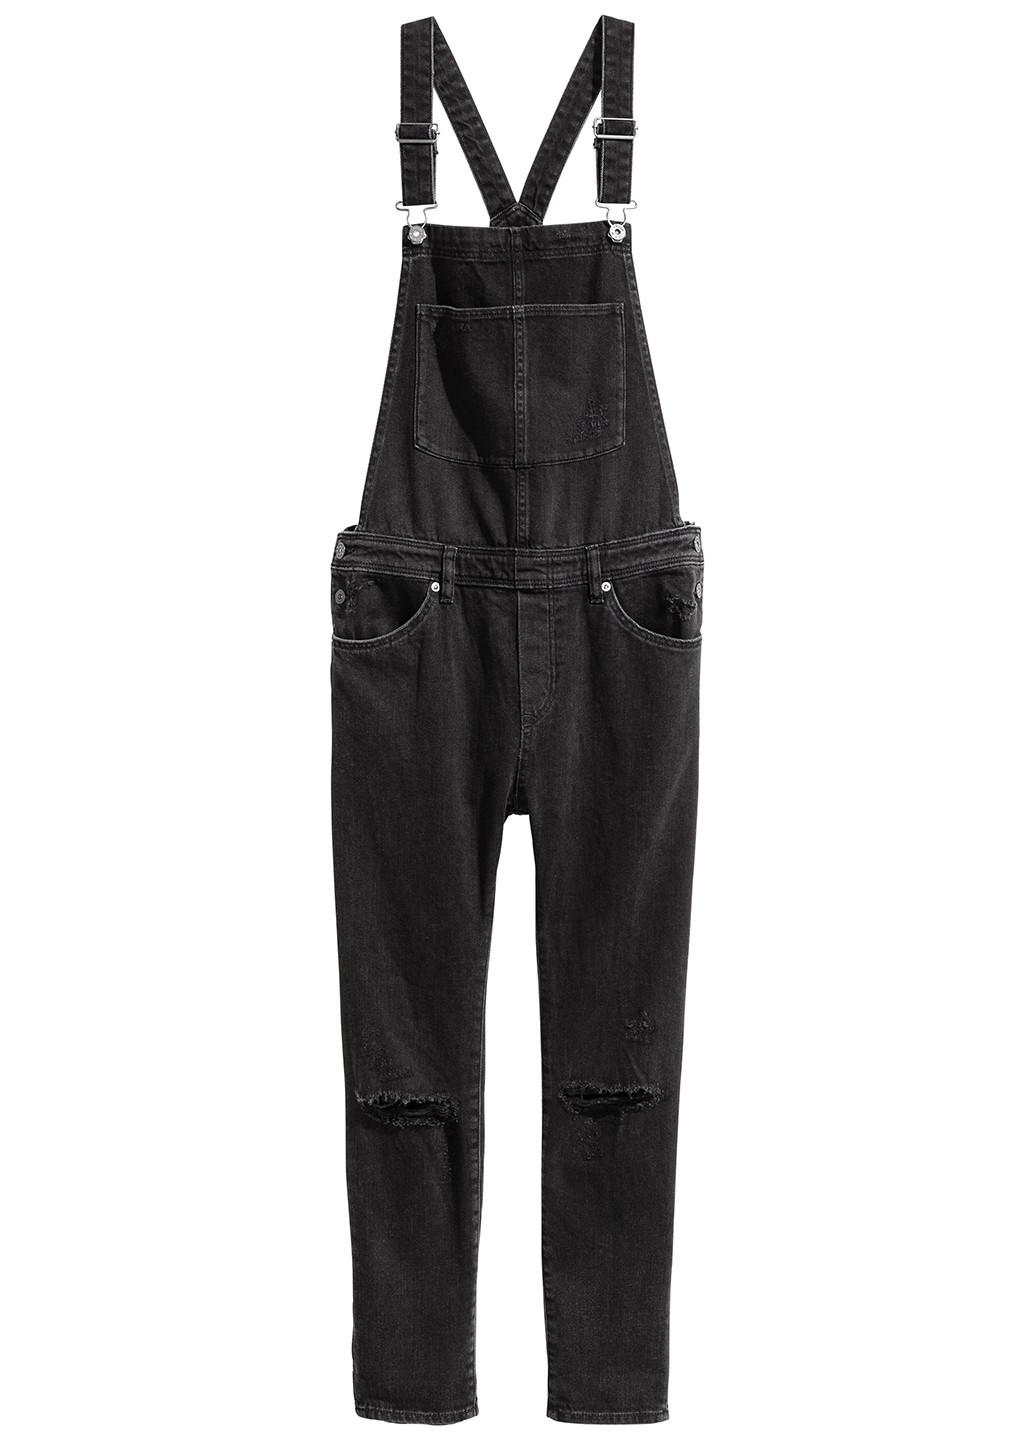 Комбинезон H&M комбинезон-брюки чёрный денил